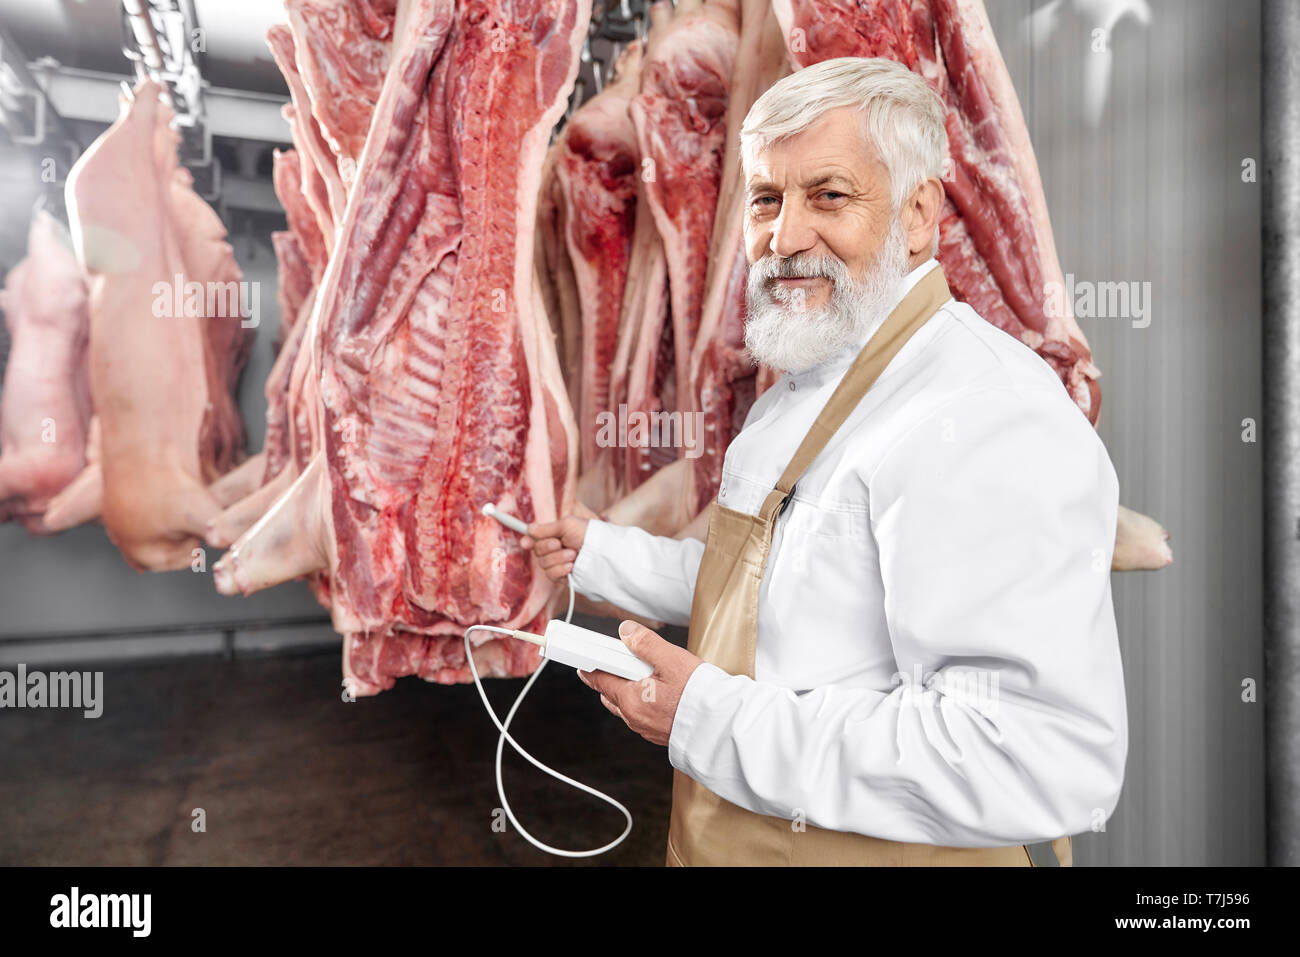 Älterer Mann mit grauem Bart und Haare stehen in Kühlschrank und Testen von frischem Schweinefleisch Schlachtkörper. Metzger in weißer Uniform und braune Schürze Haltevorrichtung, posierend, an der Kamera schaut. Stockfoto